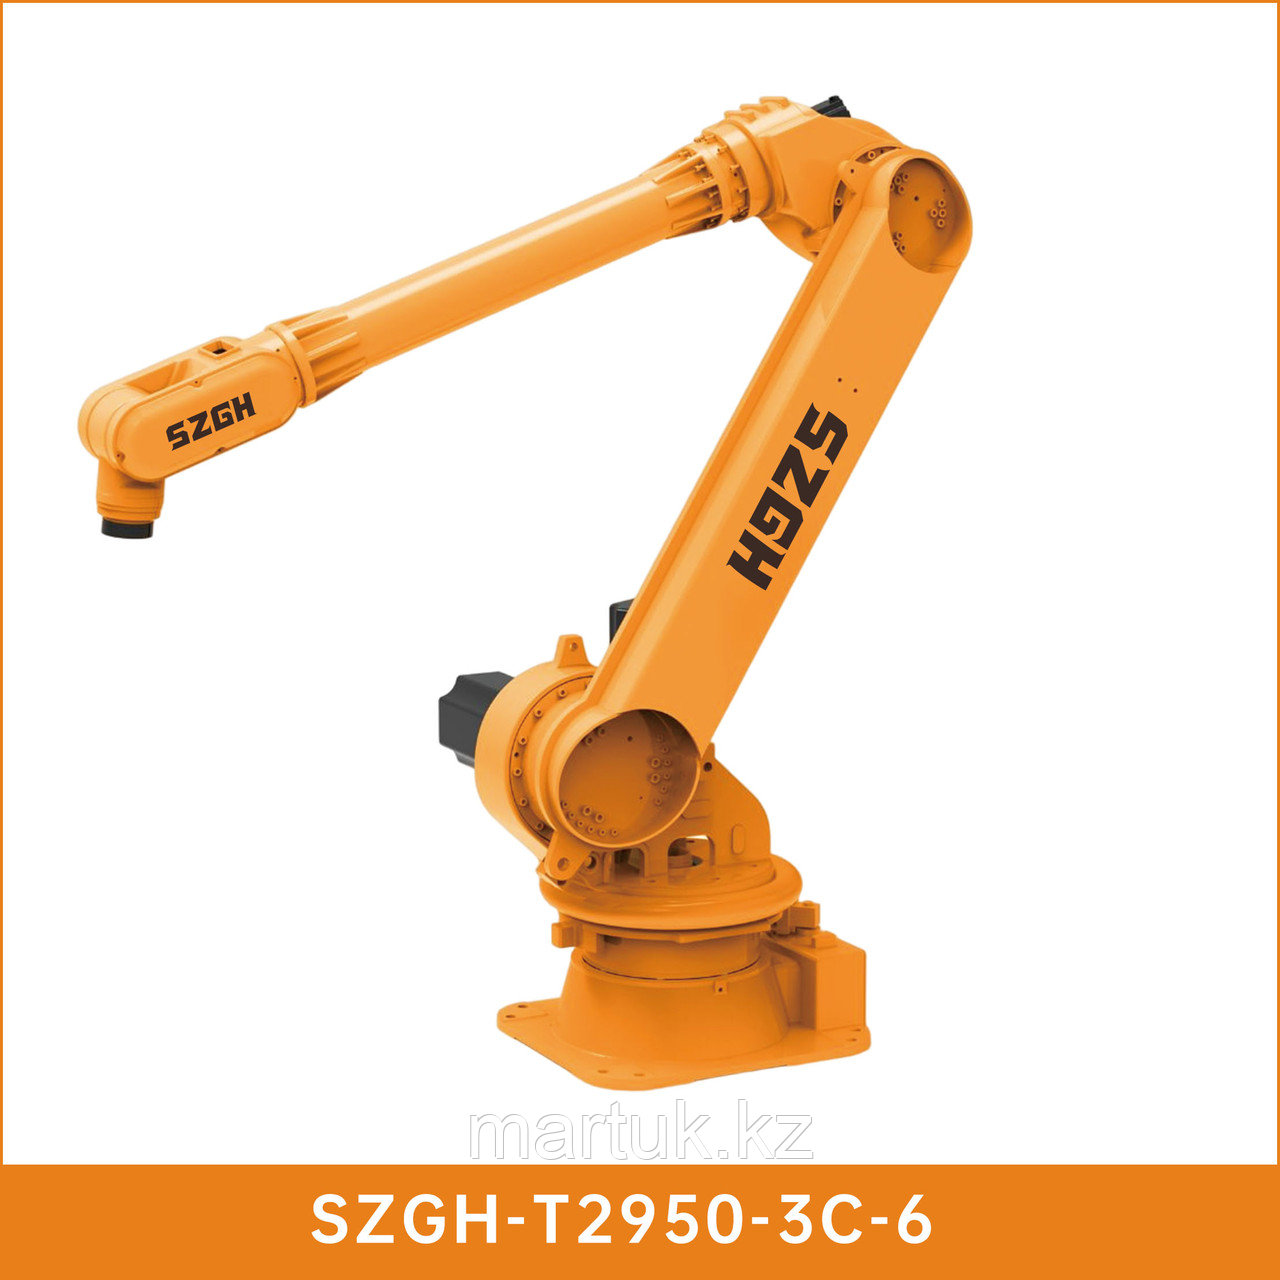 6-осевой робот SZGH-T2950-3C-6